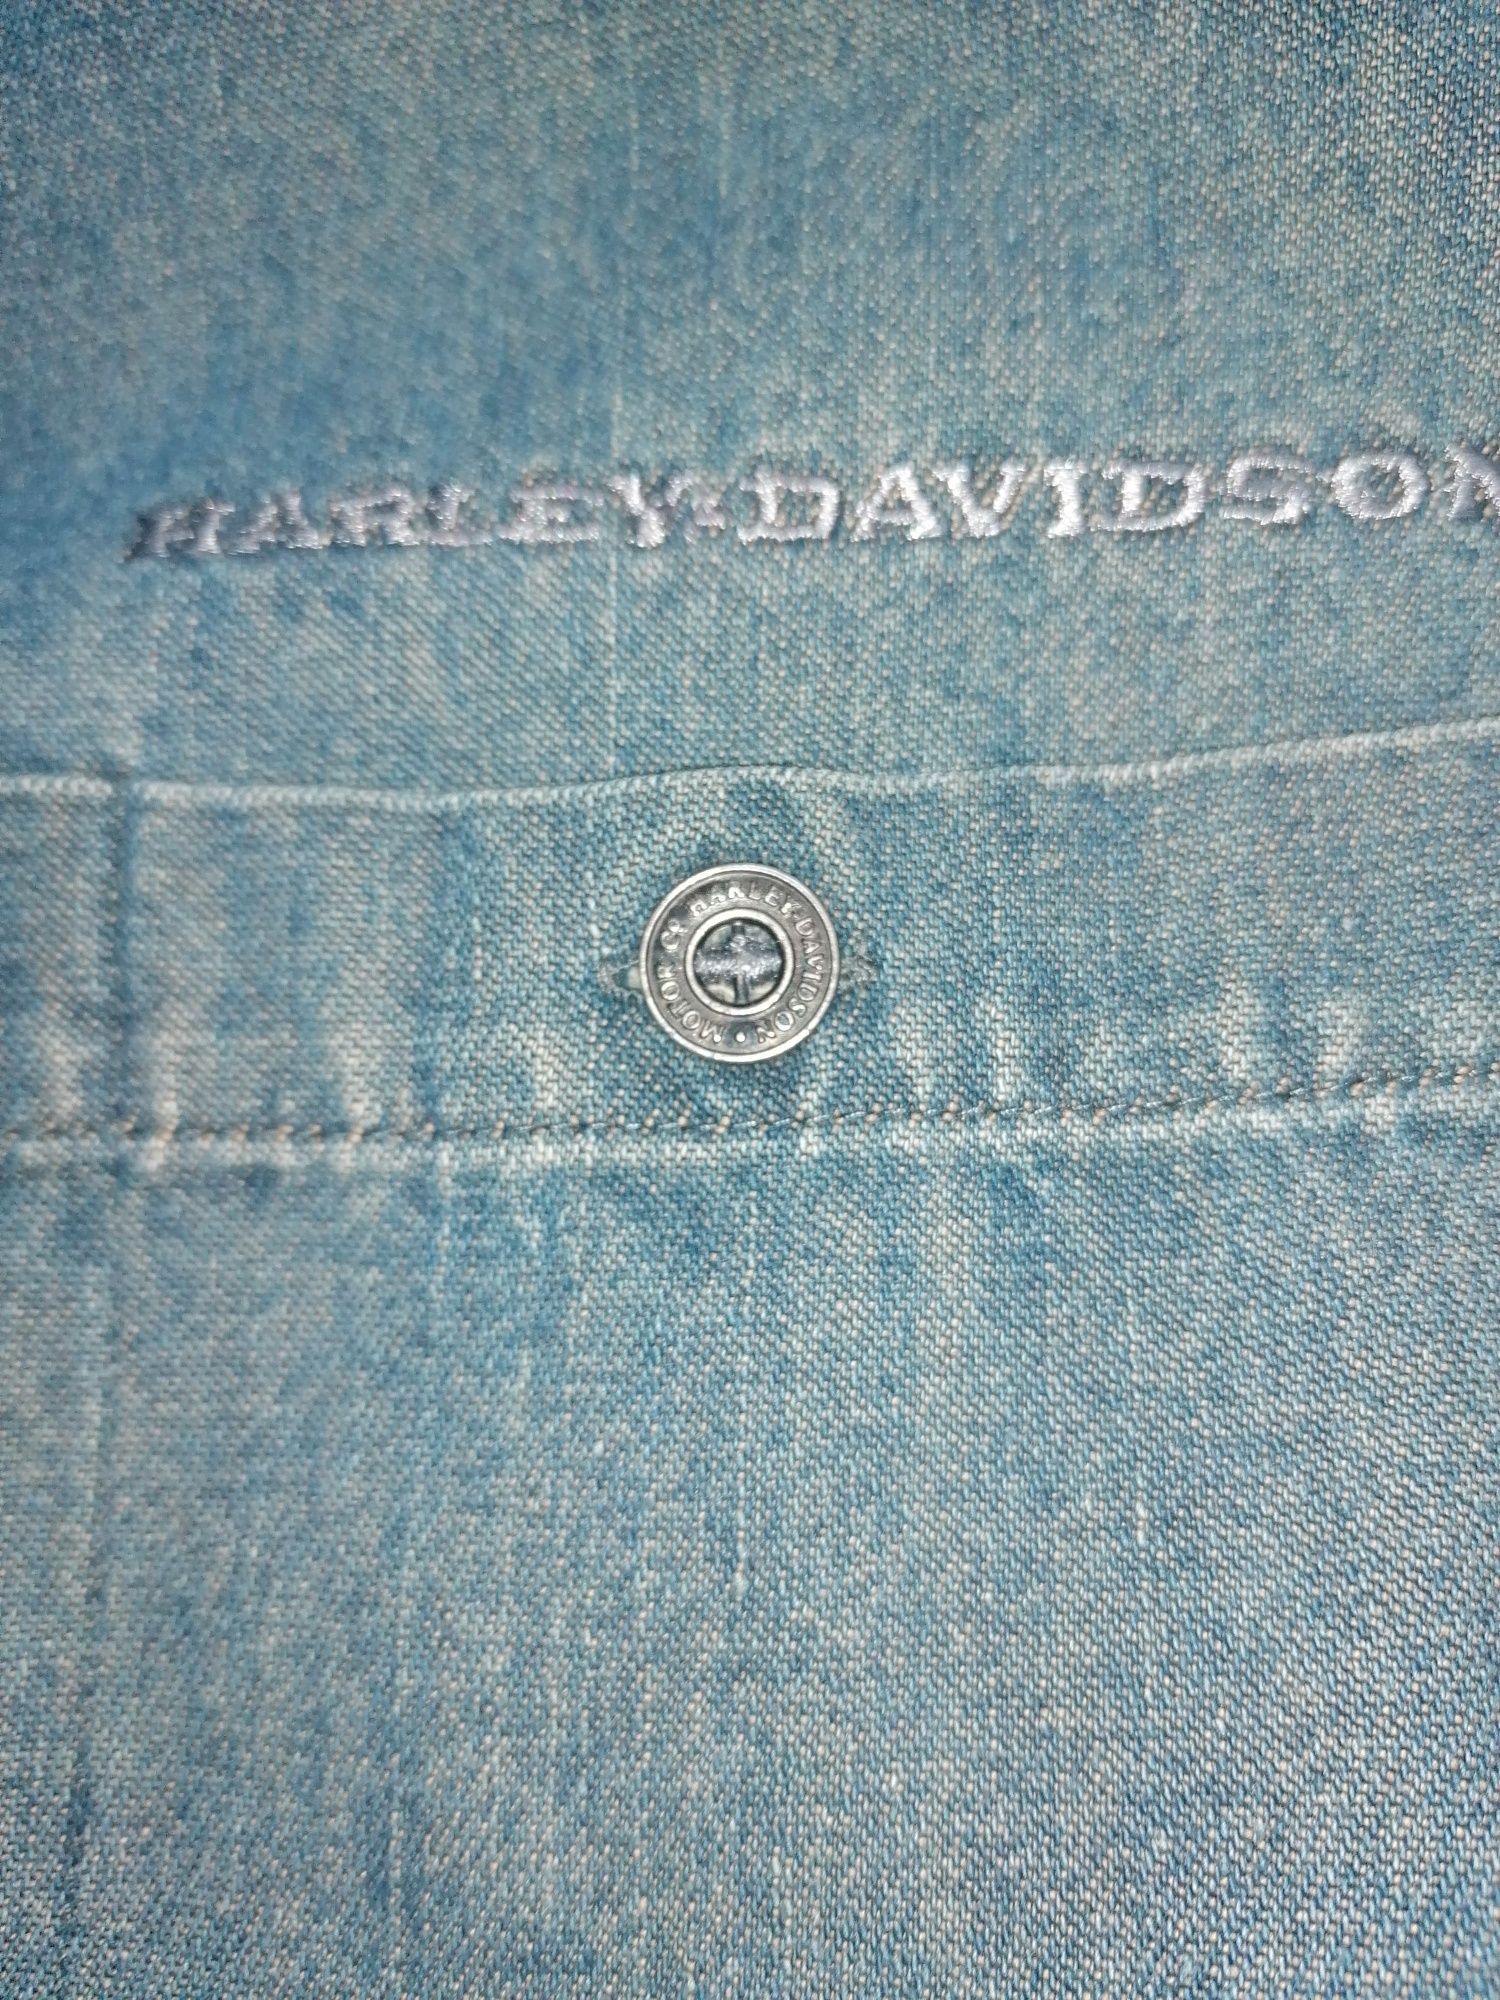 Koszula krótki rękaw firmy Harley Davidson męska jeans rozmiar XL